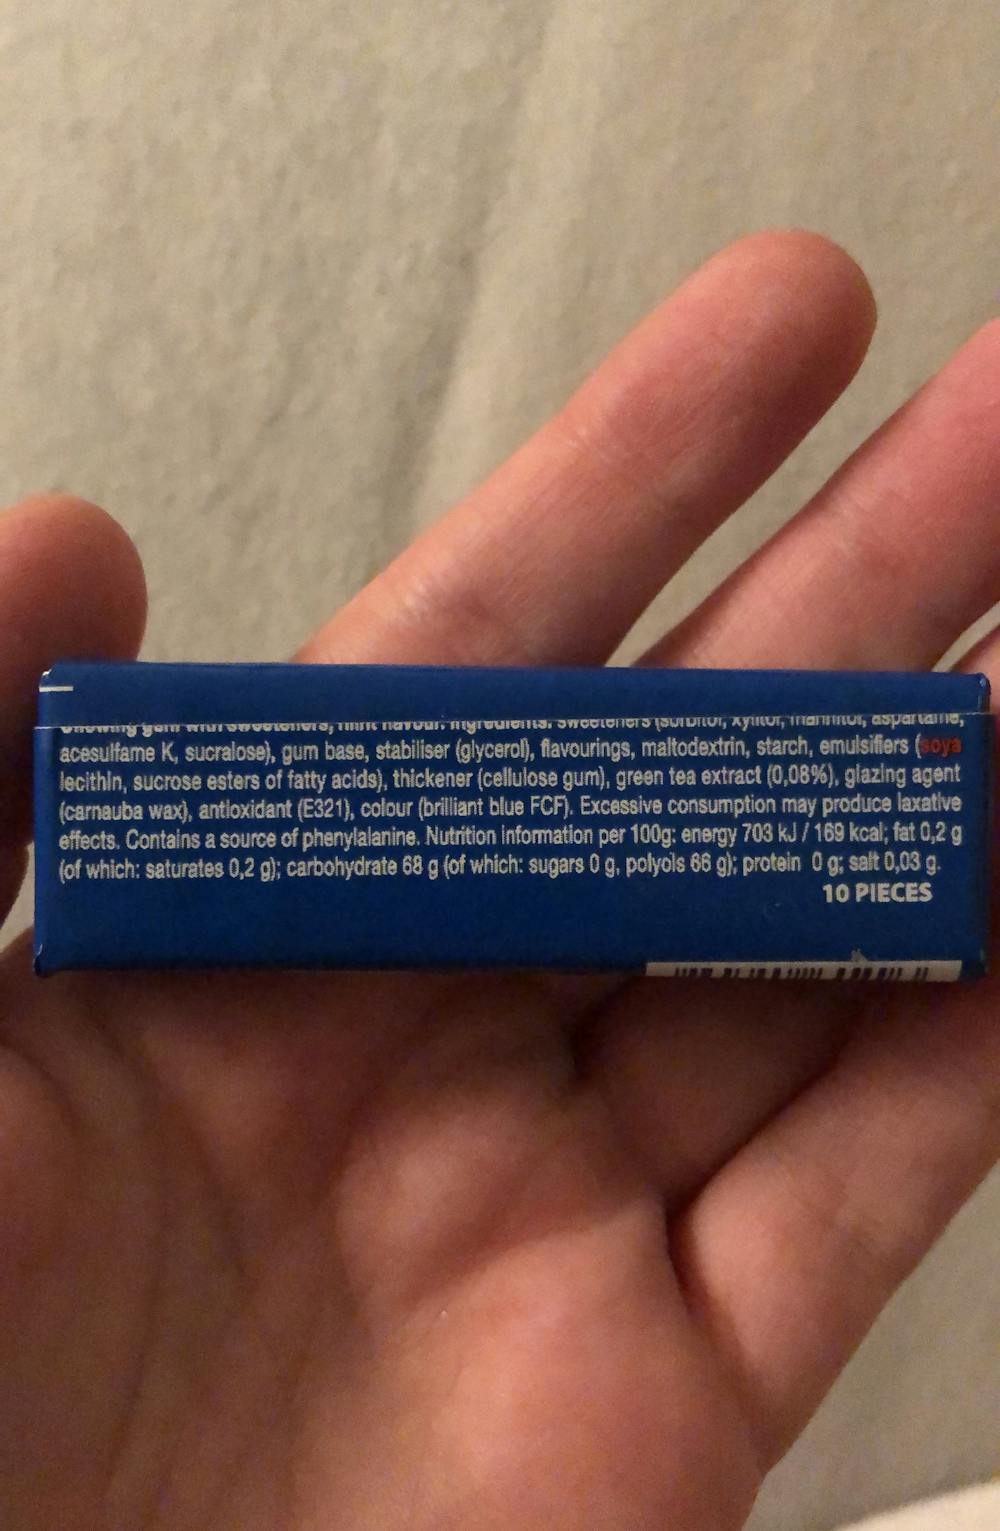 Ingredienslisten til Chewing gum pure fresh mint, Mentos